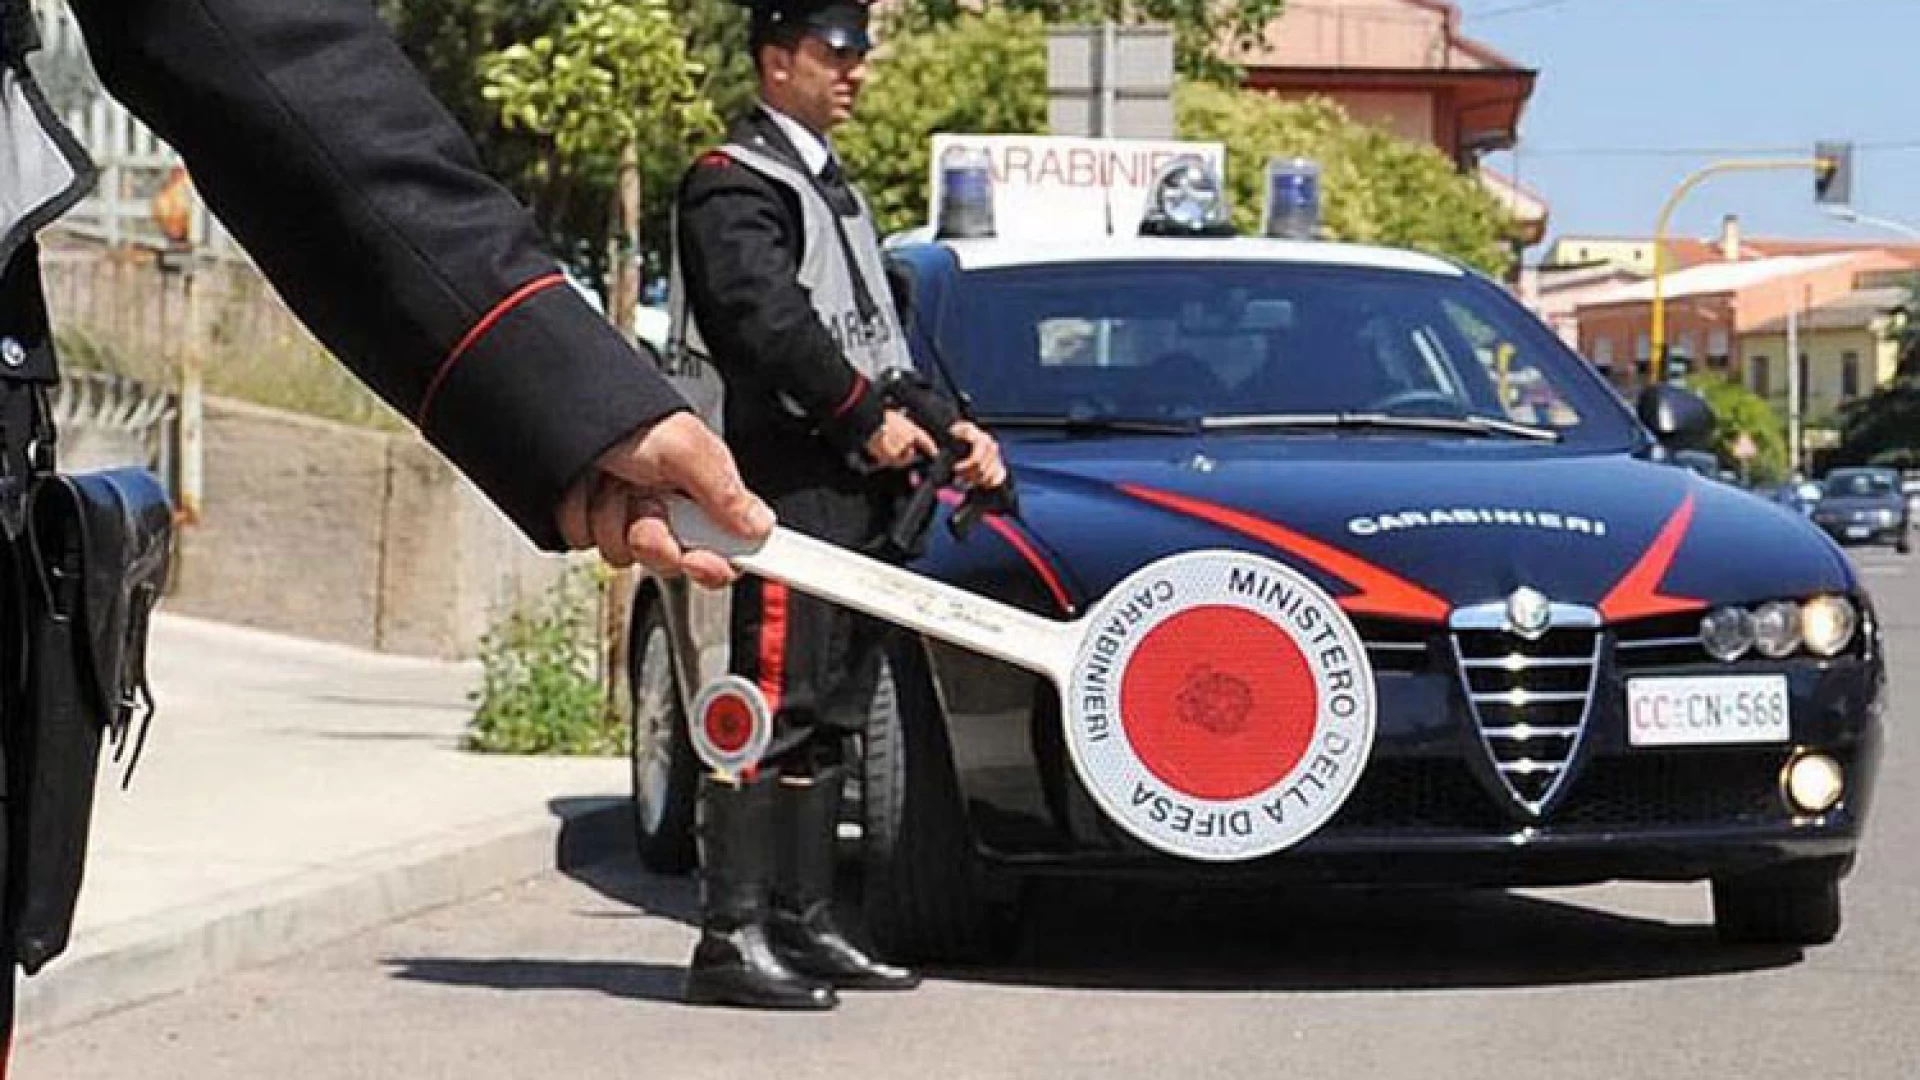 Isernia: Carabinieri in azione contro i furti, una persona arrestata e una proposta per una misura di prevenzione.